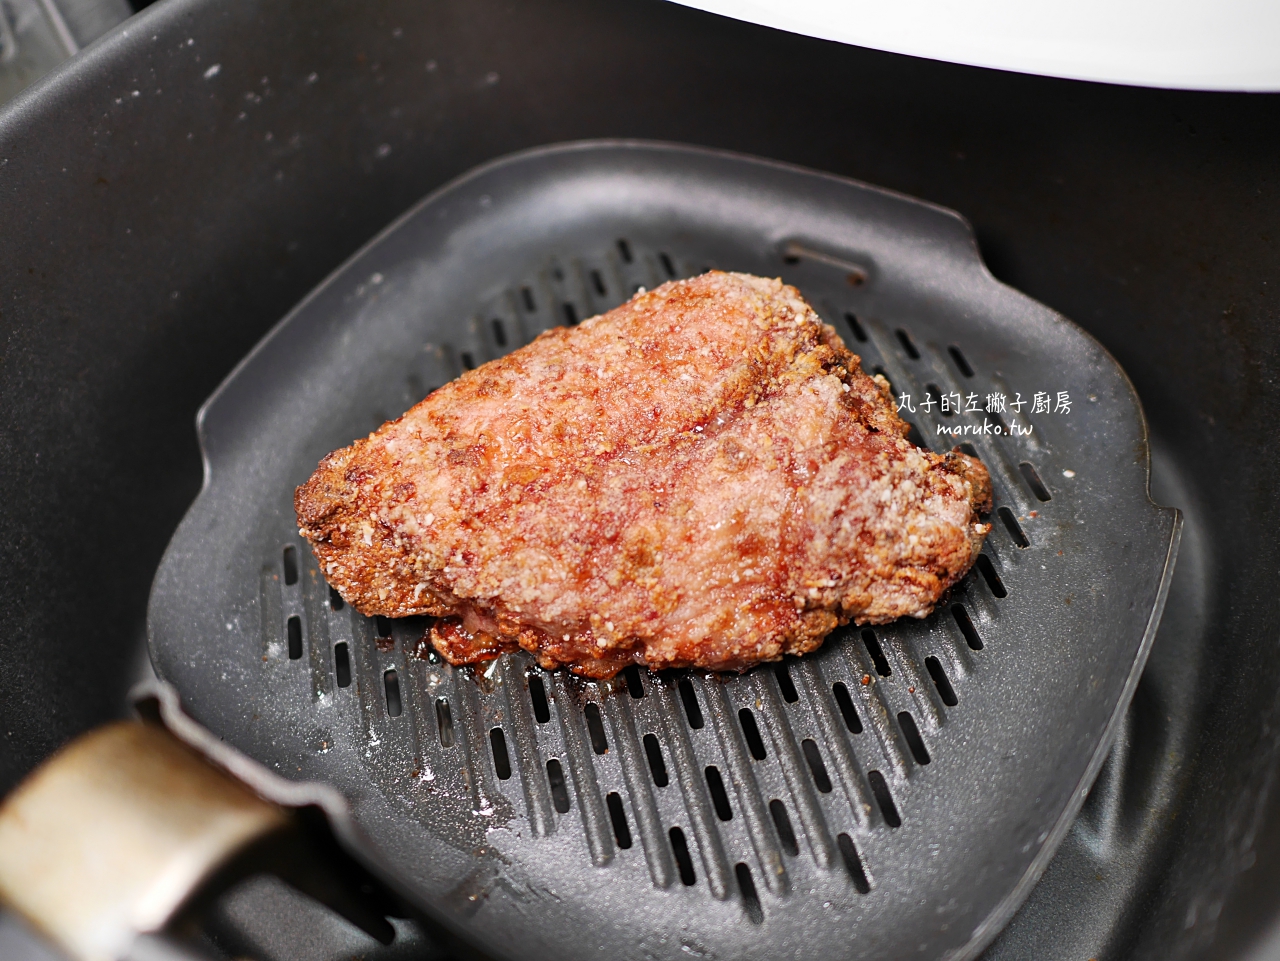 【食譜】炸紅燒肉 紅糟肉這樣做半天就入味的氣炸鍋食譜做法只要15分鐘